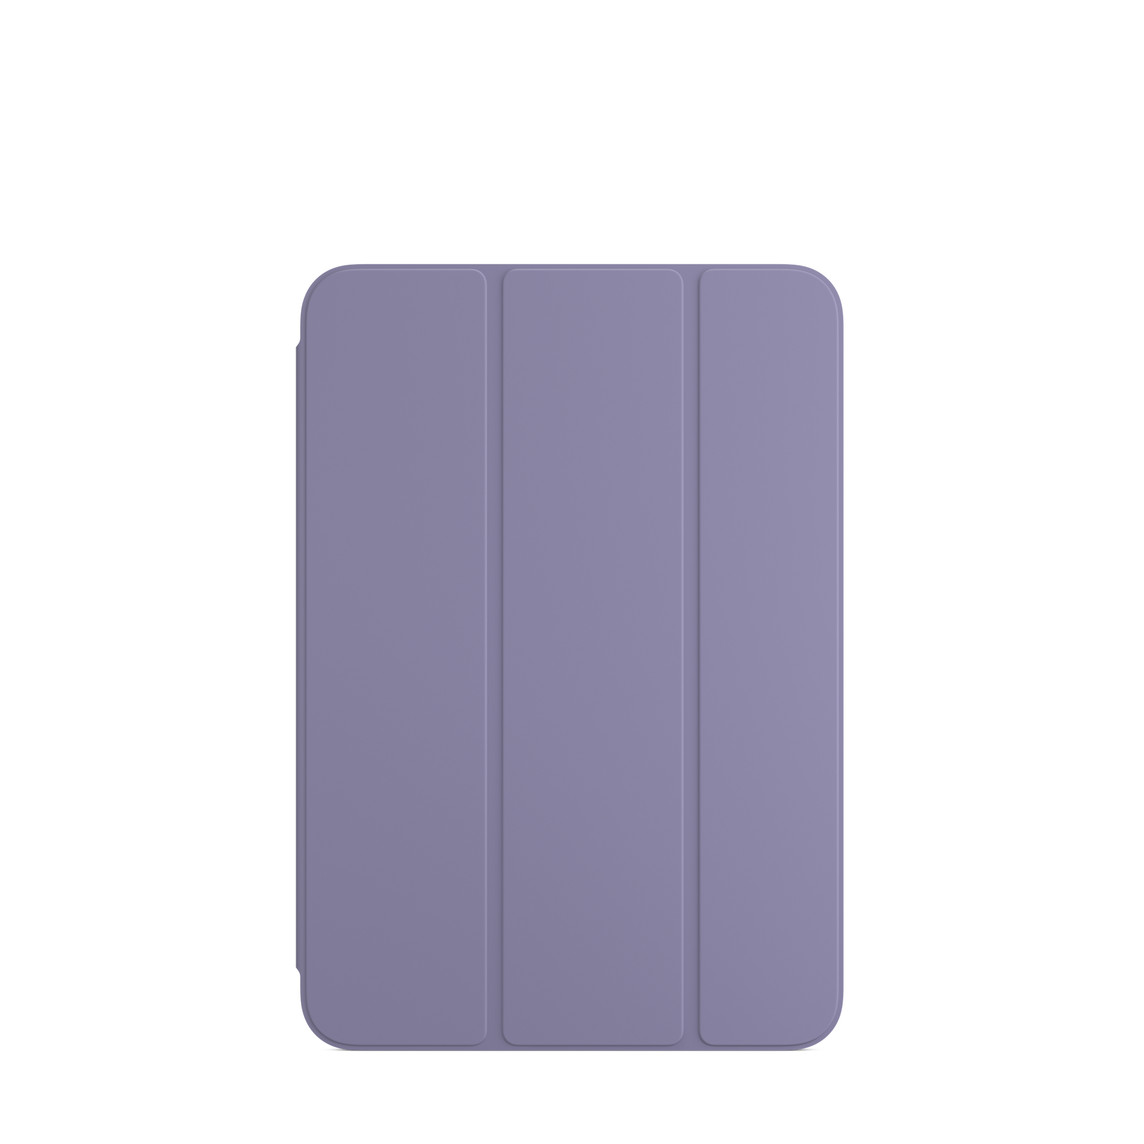 Smart Folio para iPad mini (6.ª geração) lavanda inglesa.